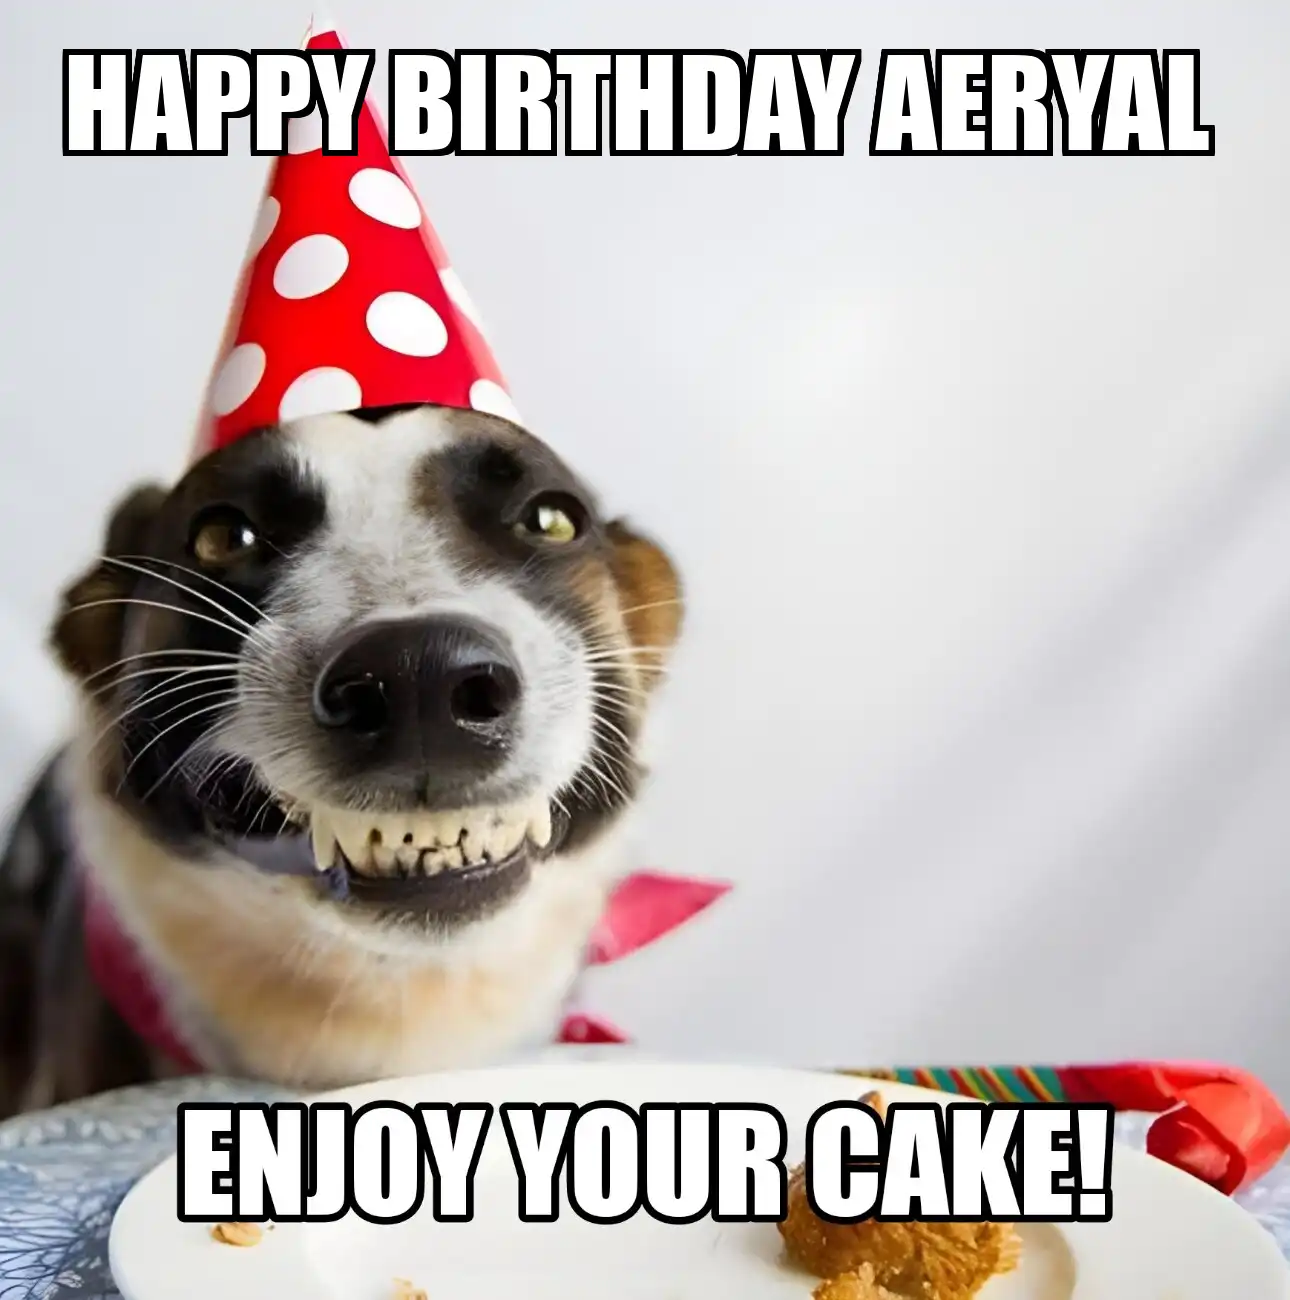 Happy Birthday Aeryal Enjoy Your Cake Dog Meme